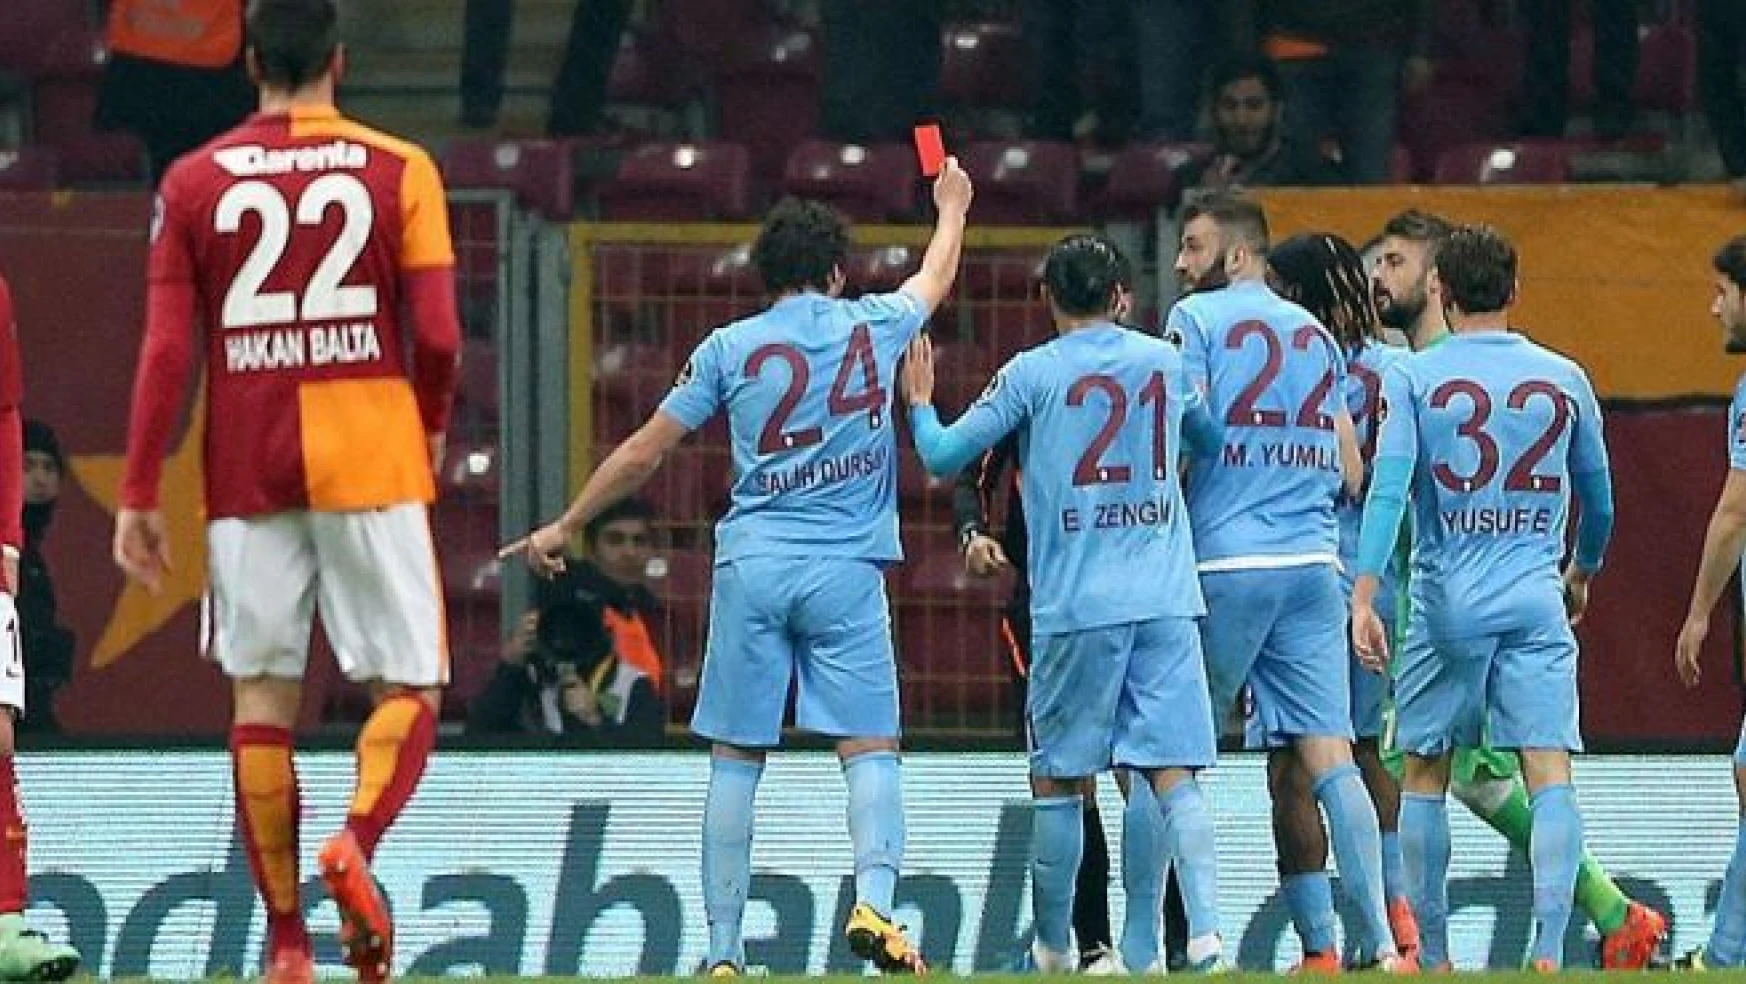 Trabzonsporlu futbolcu Salih Dursun hakeme kırmızı kart gösterdi!